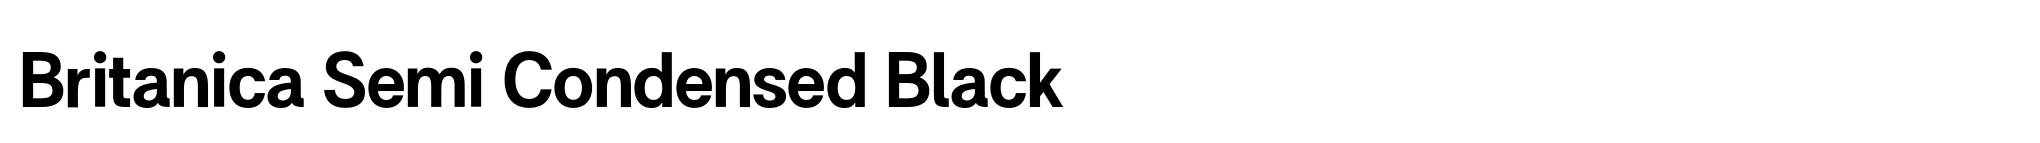 Britanica Semi Condensed Black image